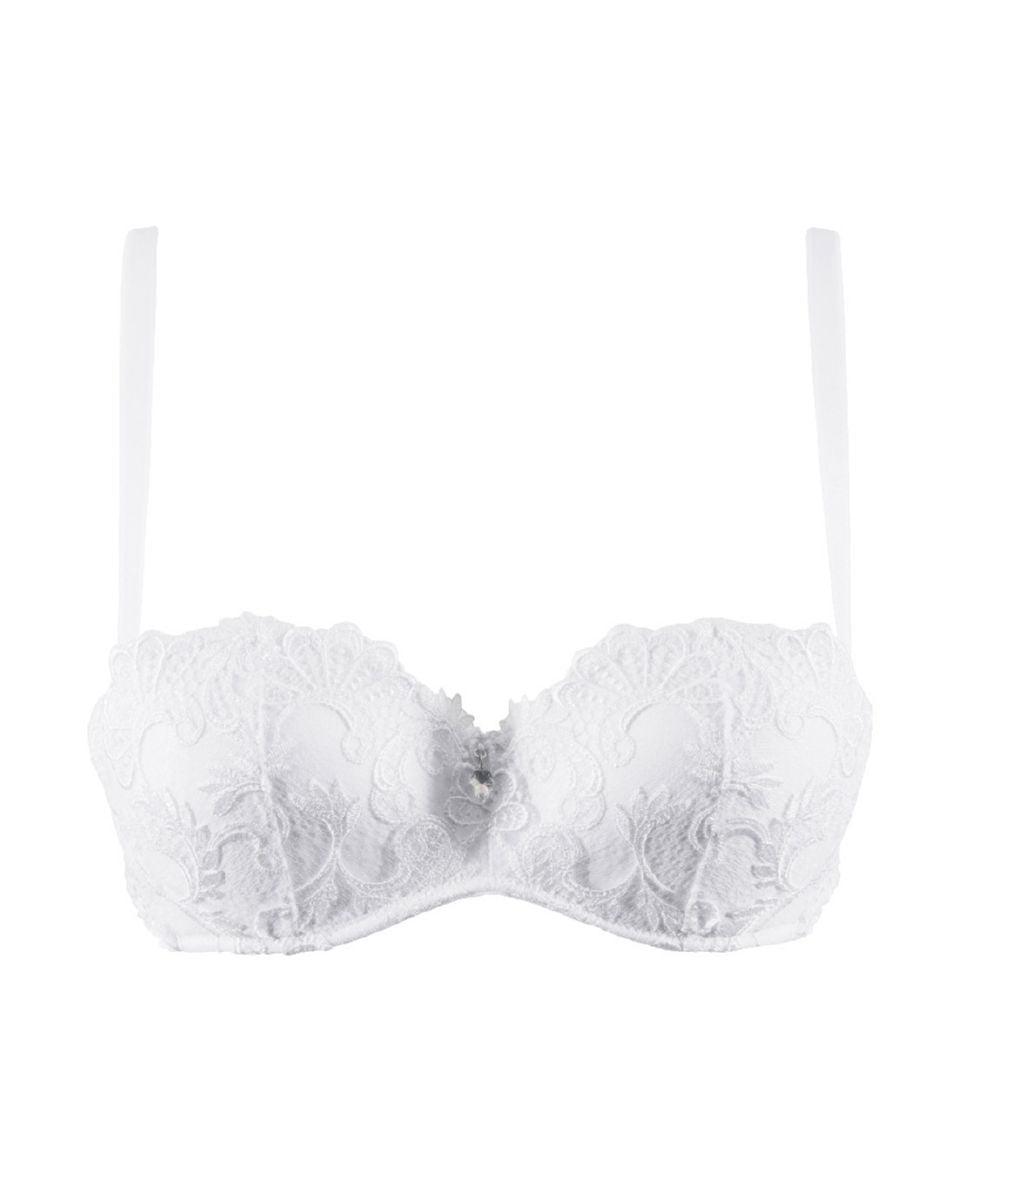 Lise Charmel 'Dressing Floral' (White) Strapless Bra - Sandra Dee - Product Shot - Front